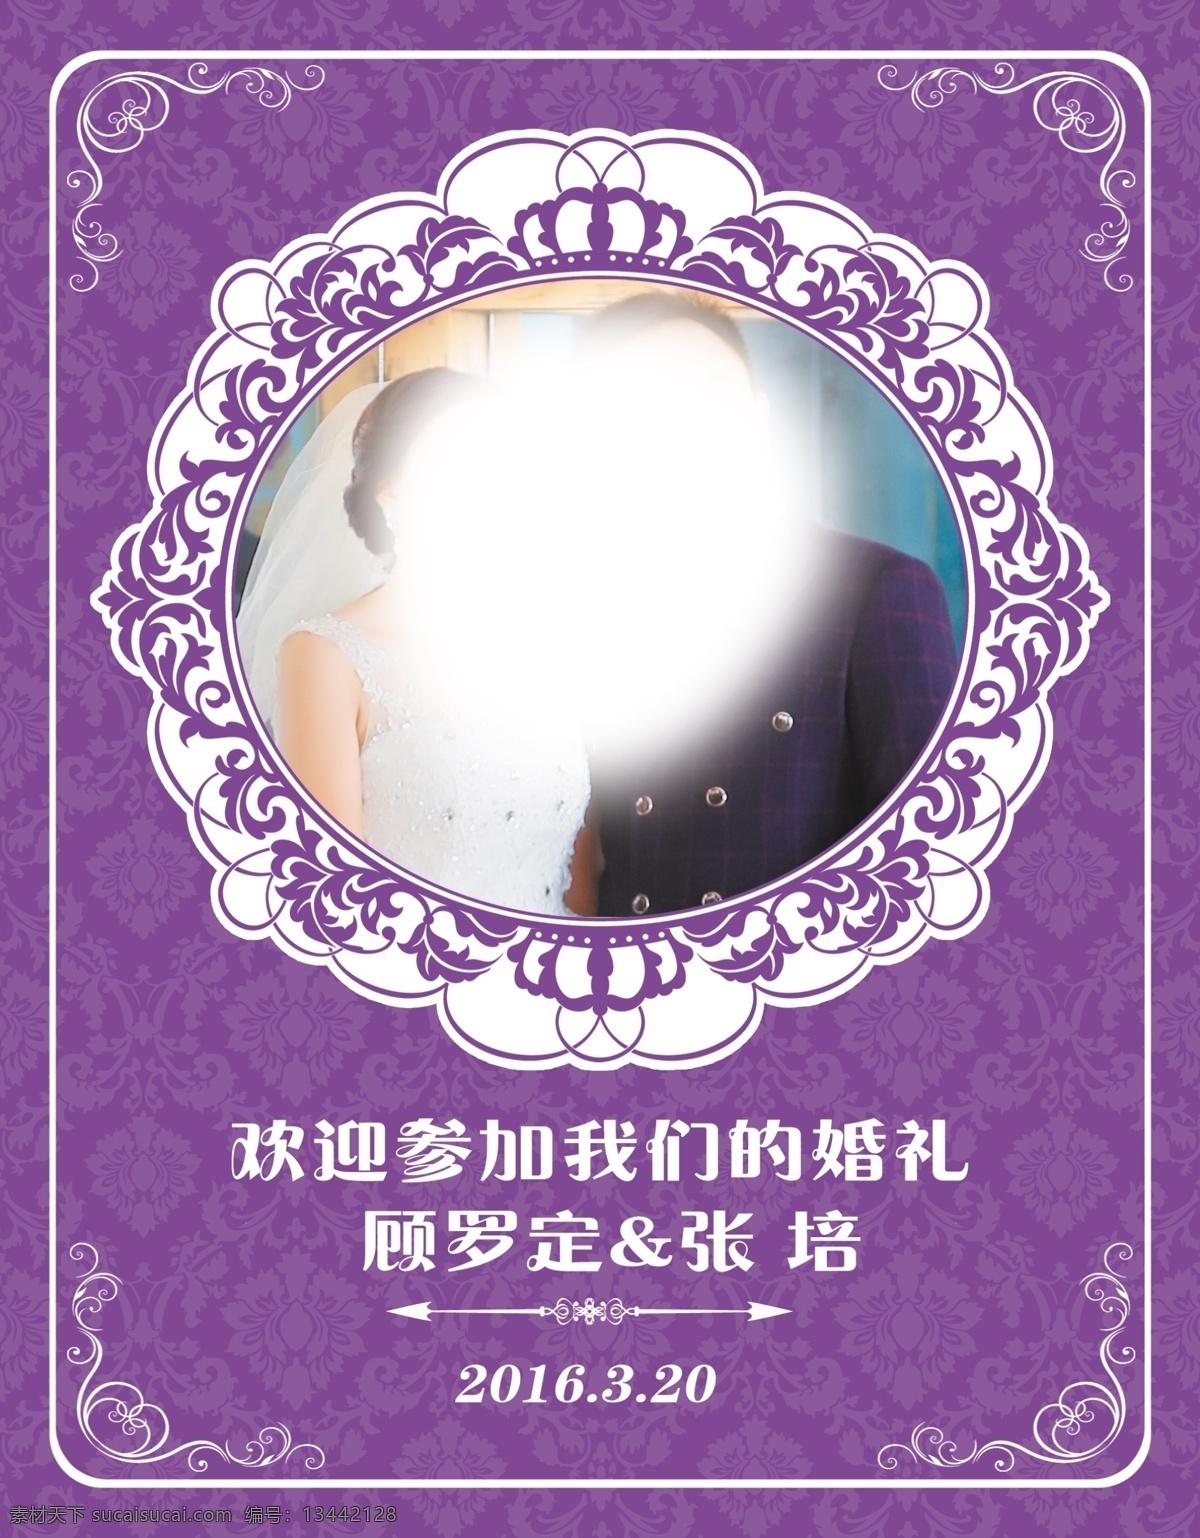 欢迎牌 婚庆 紫色 欧式 边框 底纹 结婚 logo 梦幻背景 分层